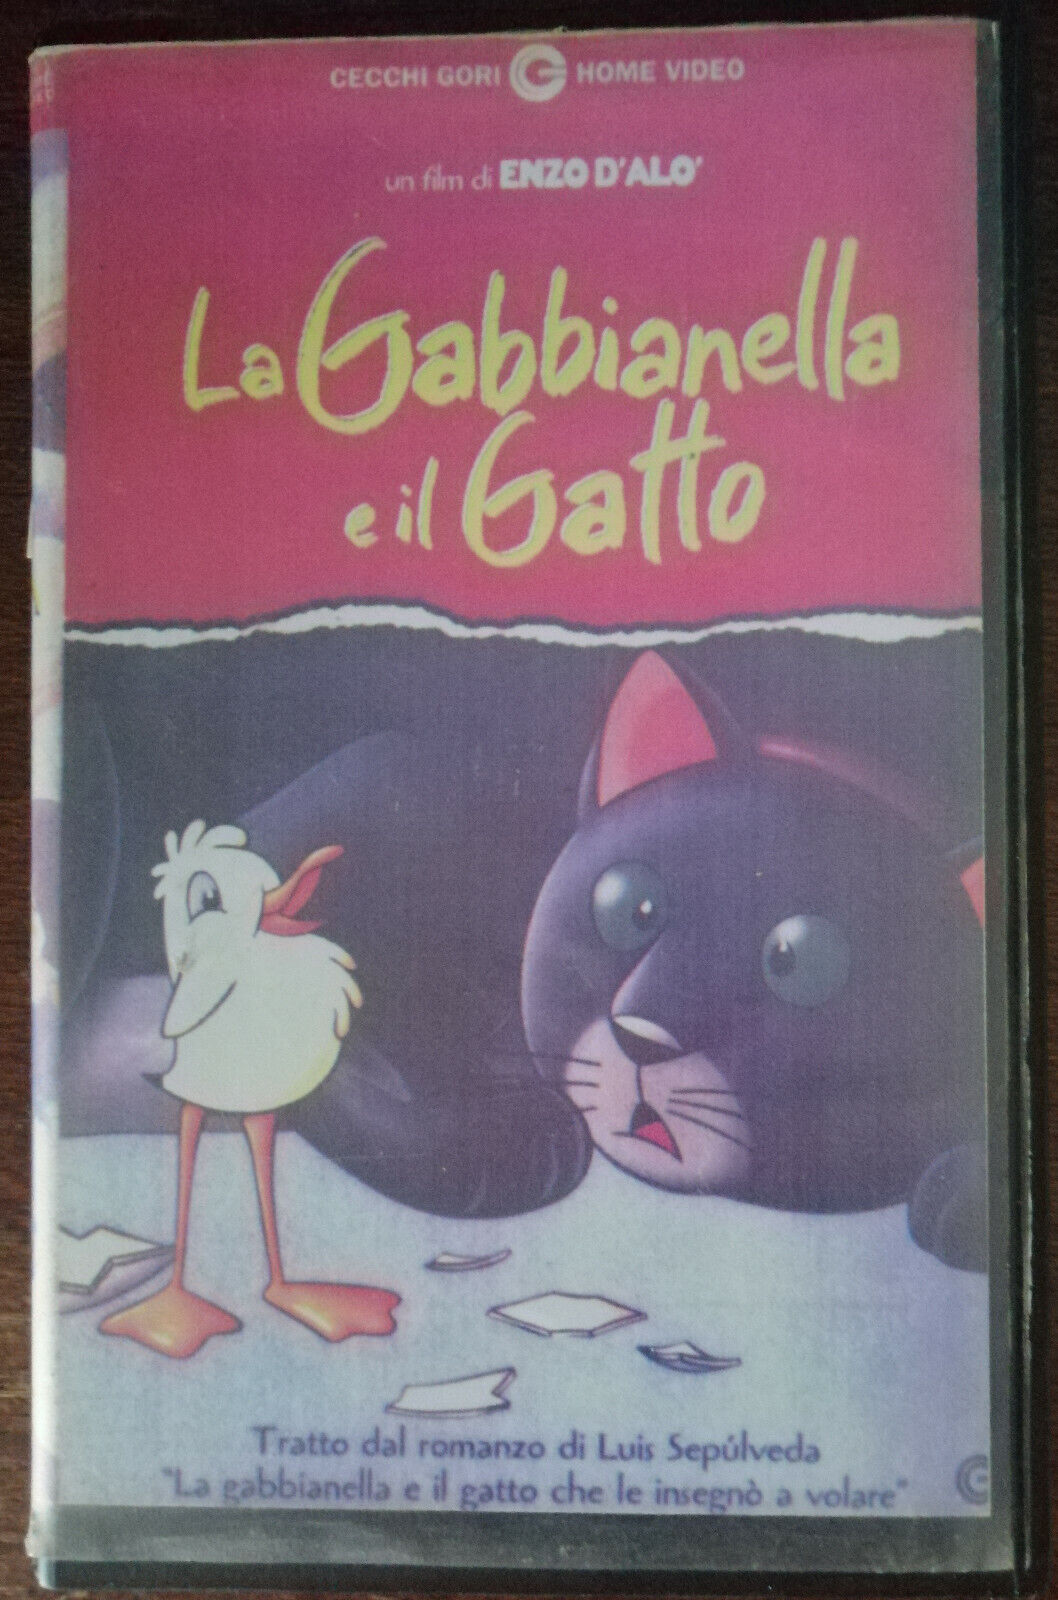 La Gabbianella e il Gatto - Cecchi Gori Home video,1999 - VHS - A